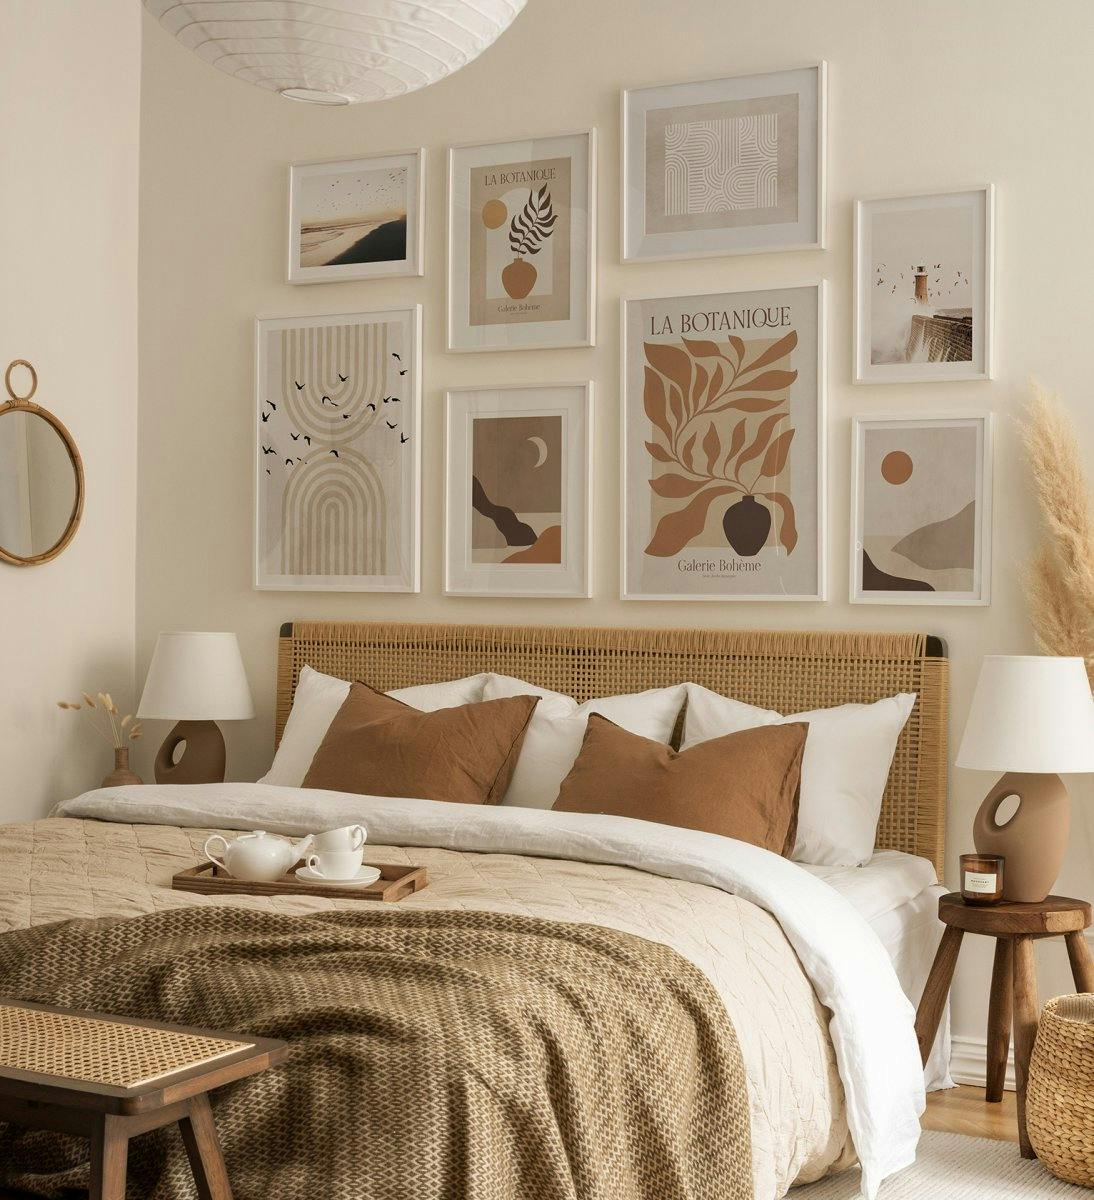 베이지와 브라운 색상의 모던한 갤러리 벽, 추상적인 아트 프린트와 화이트 우드 프레임이 침실을 장식합니다.